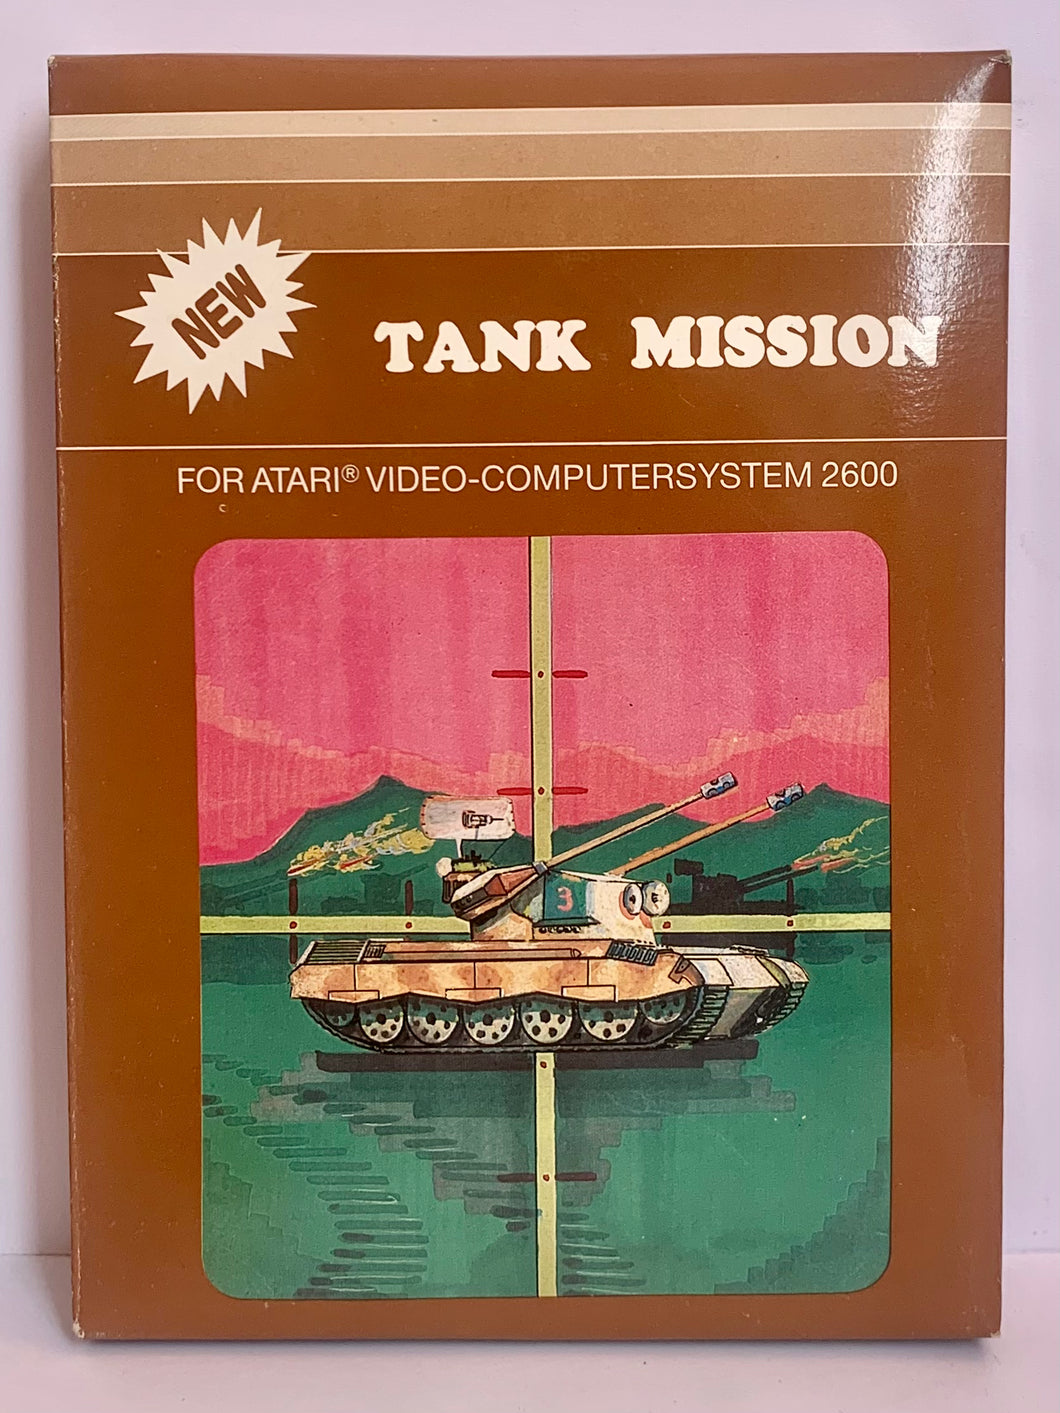 Tank Mission - Atari VCS 2600 - NTSC - CIB